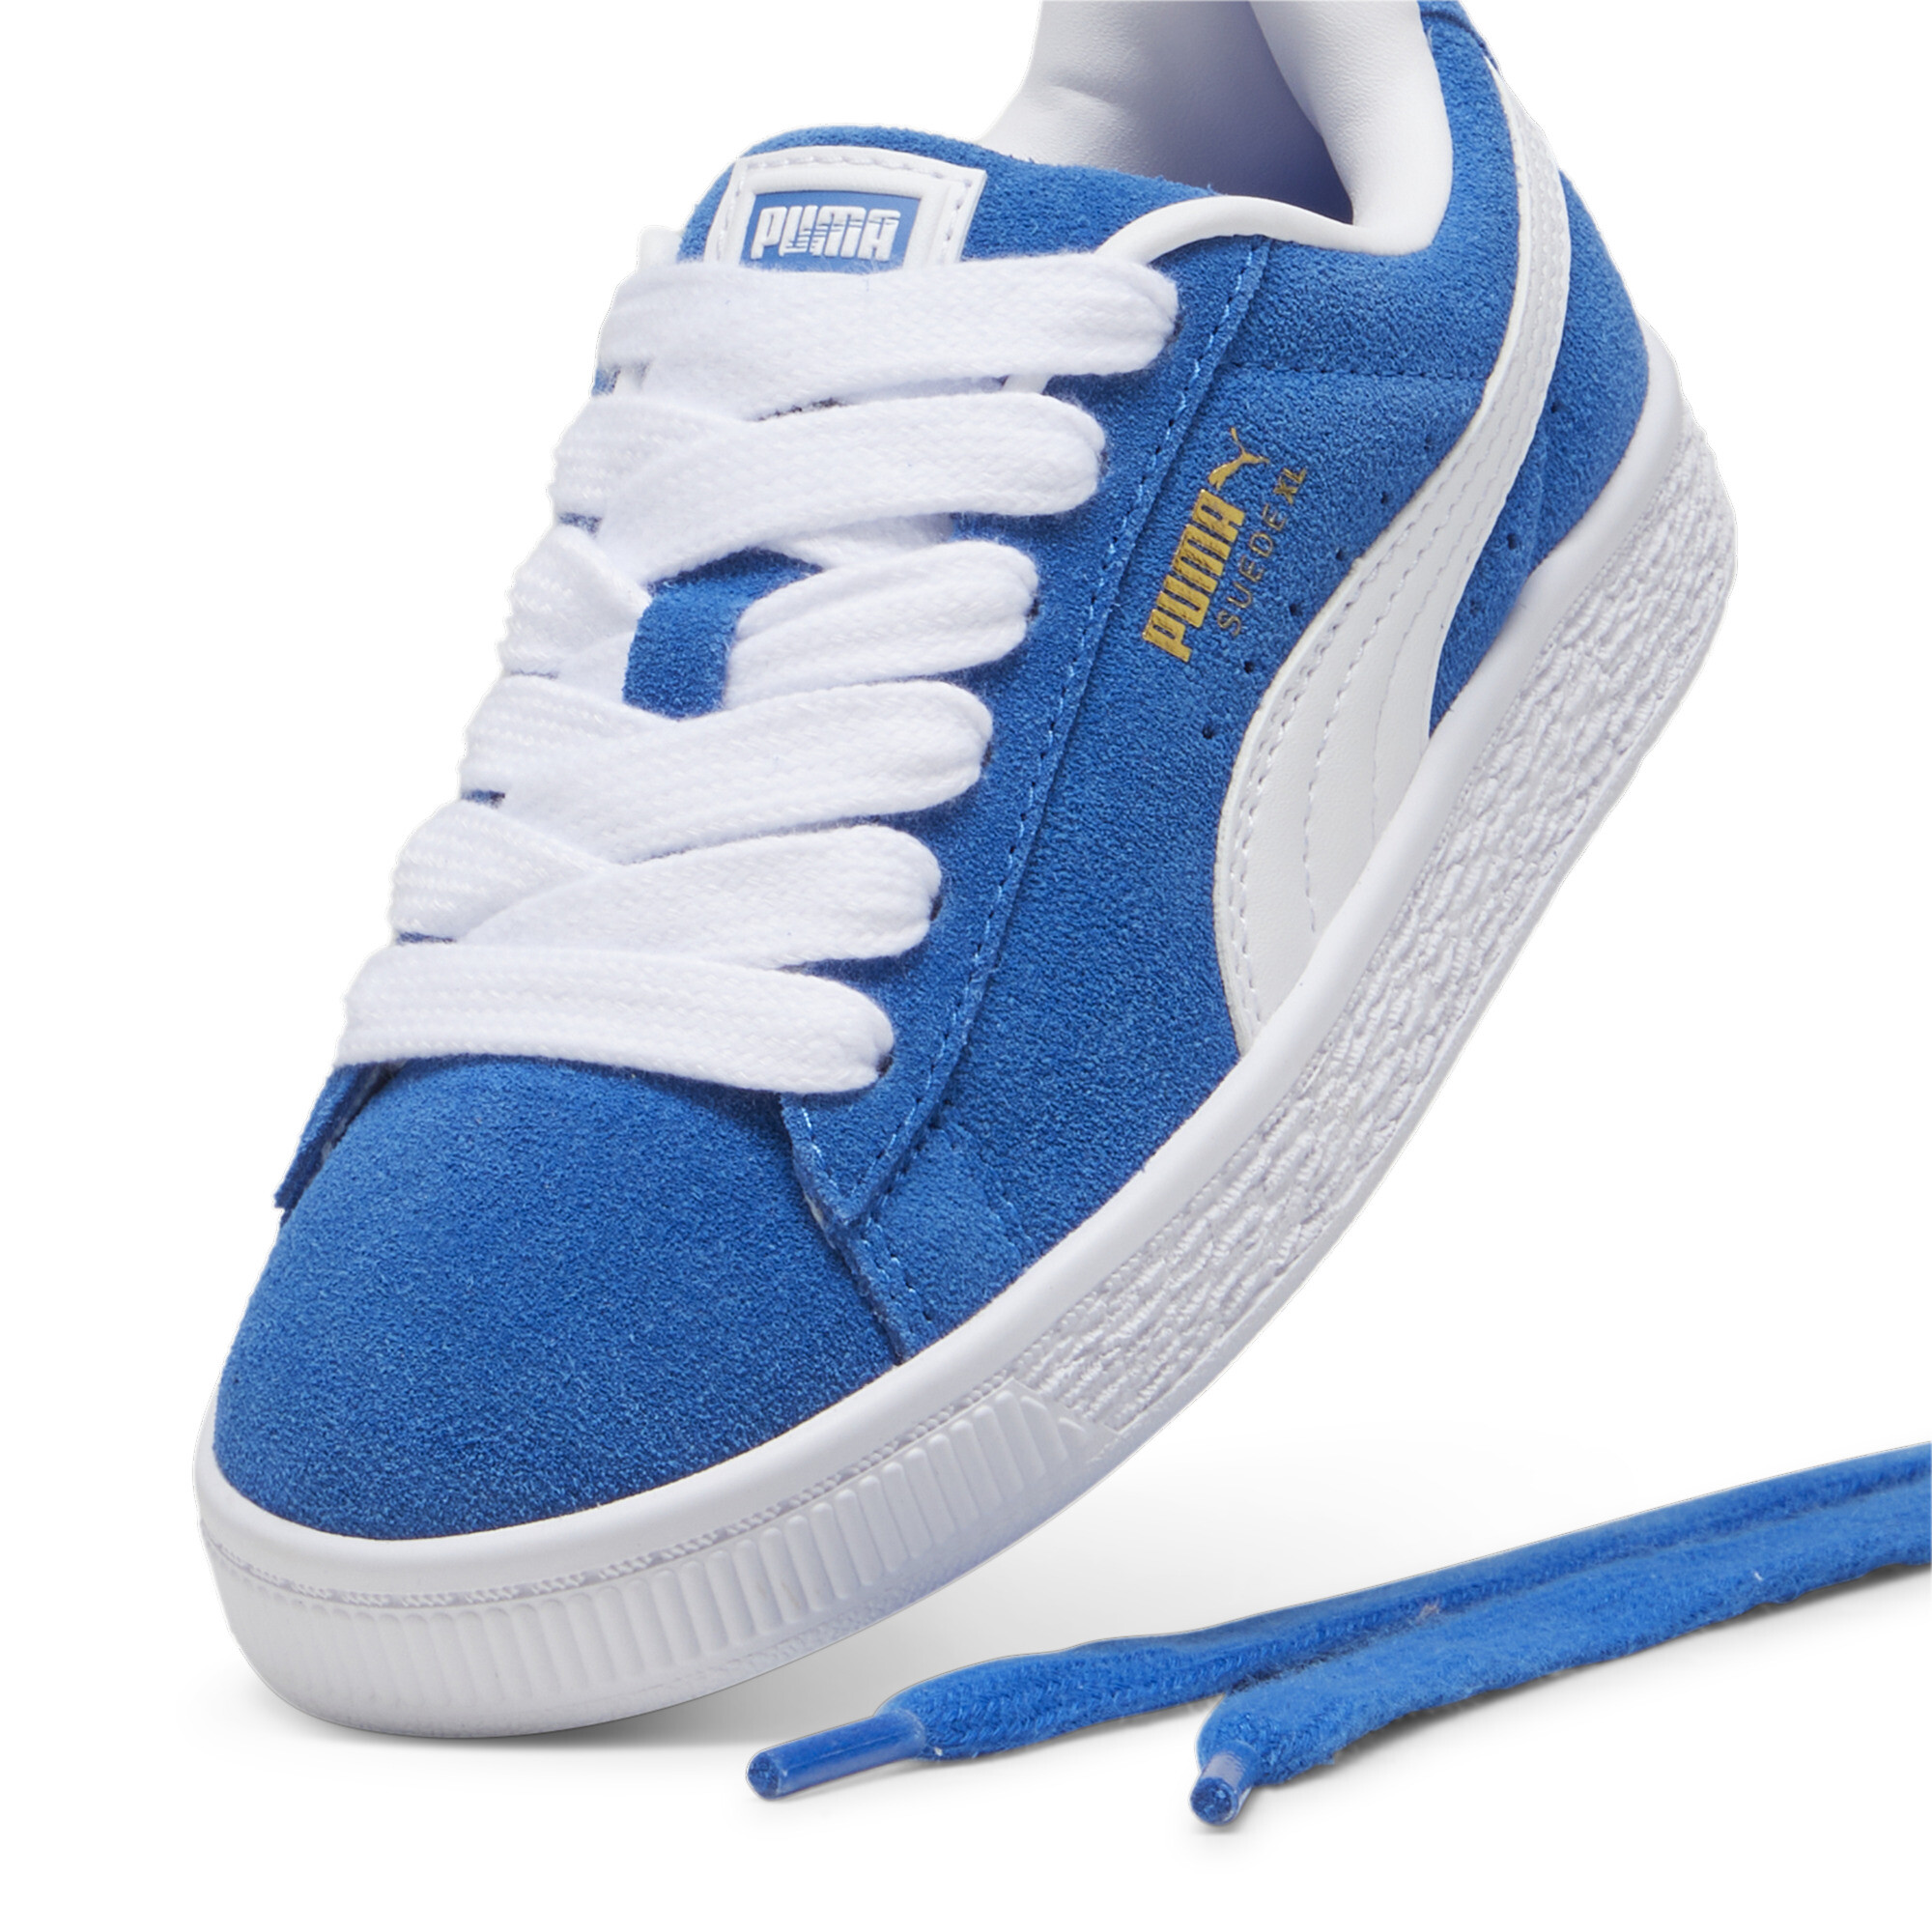 Kids' PUMA Suede XL Sneakers In Blue, Size EU 32